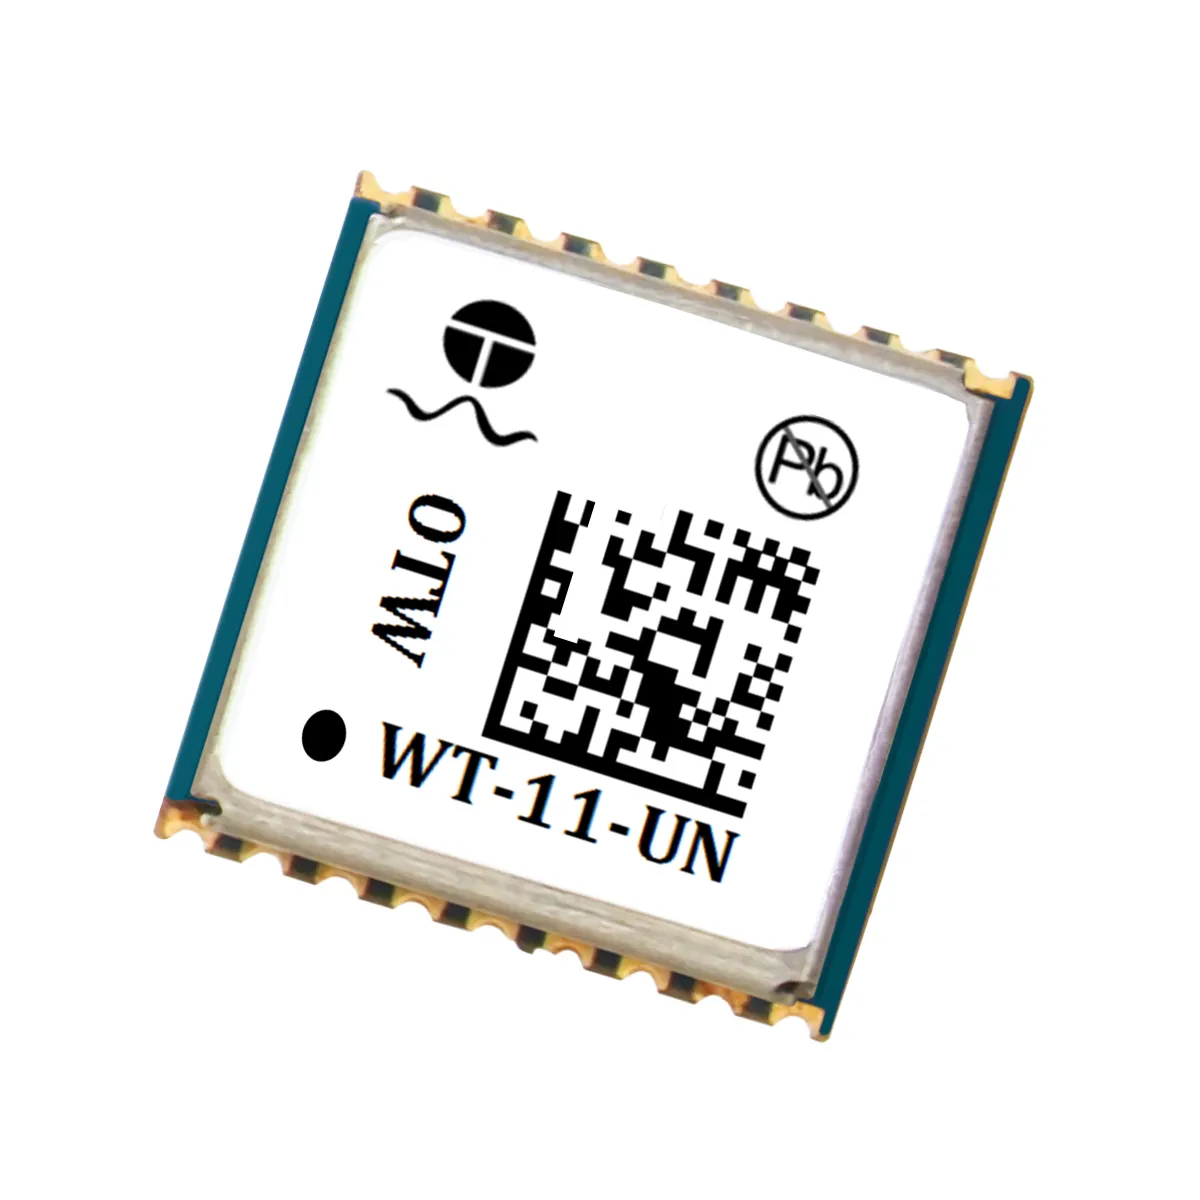 Mini WT-11-UN Pet Tracker modulo GPS per la navigazione per auto e Pet localizzazione localizzazione GNSS posizionamento satellitare